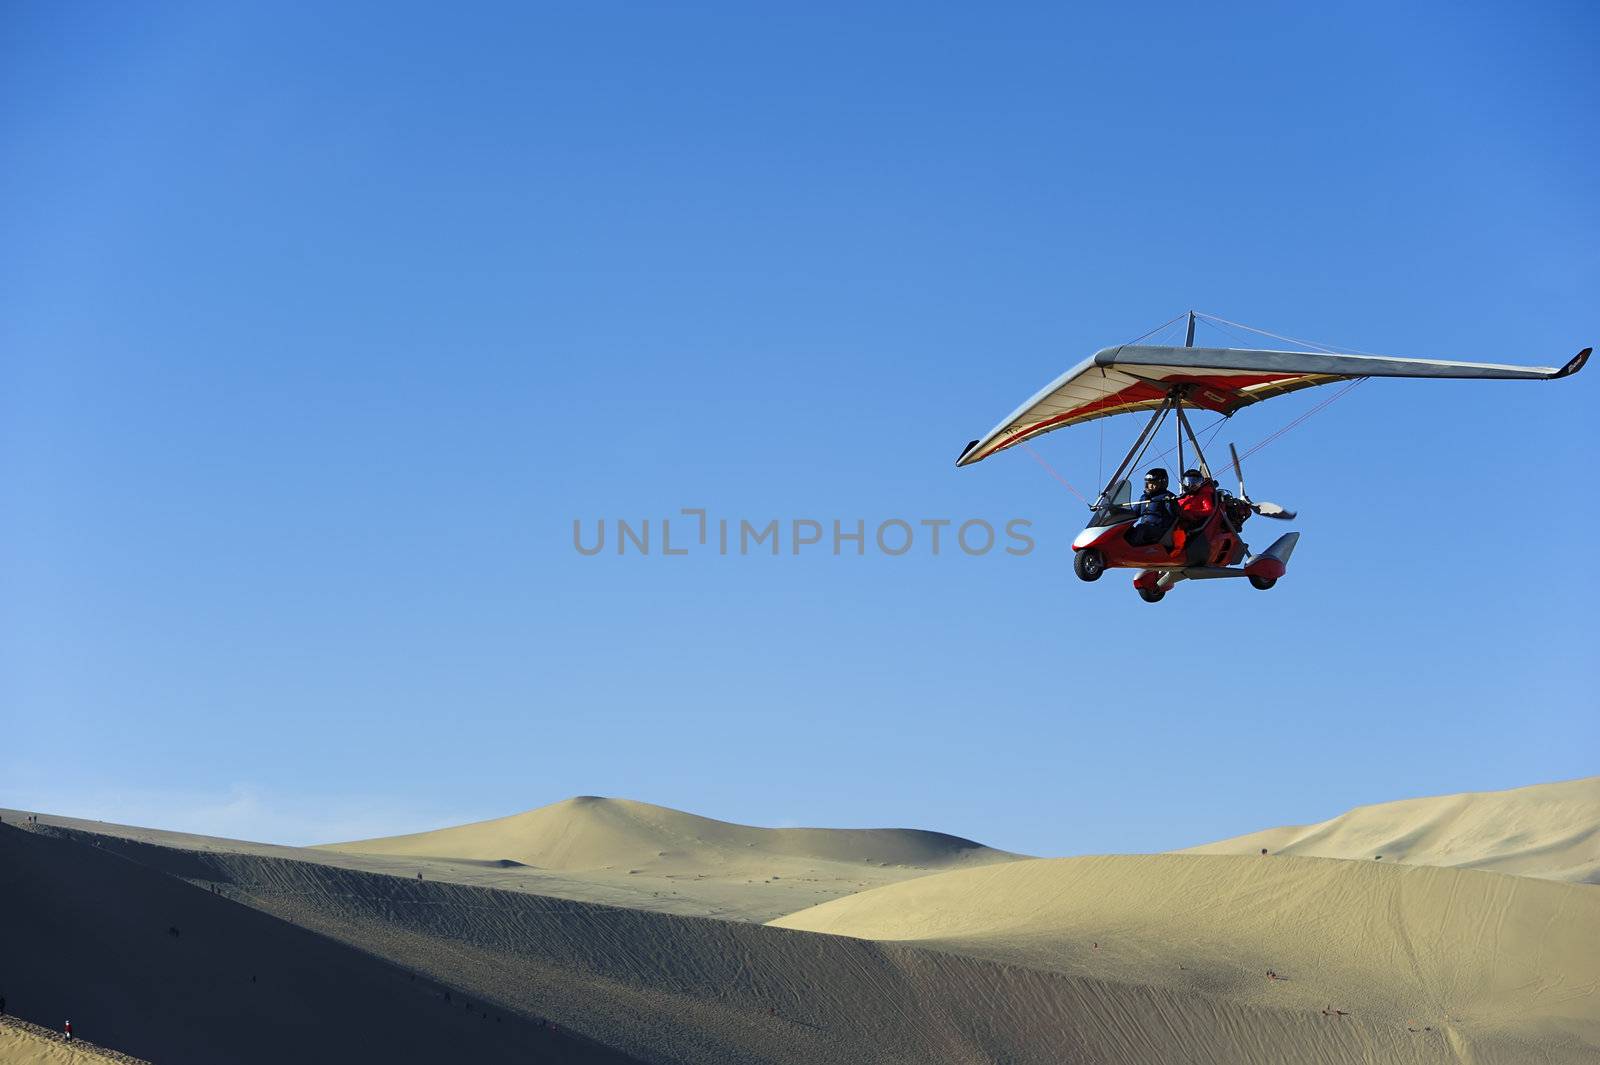 powered glider flying above the desert